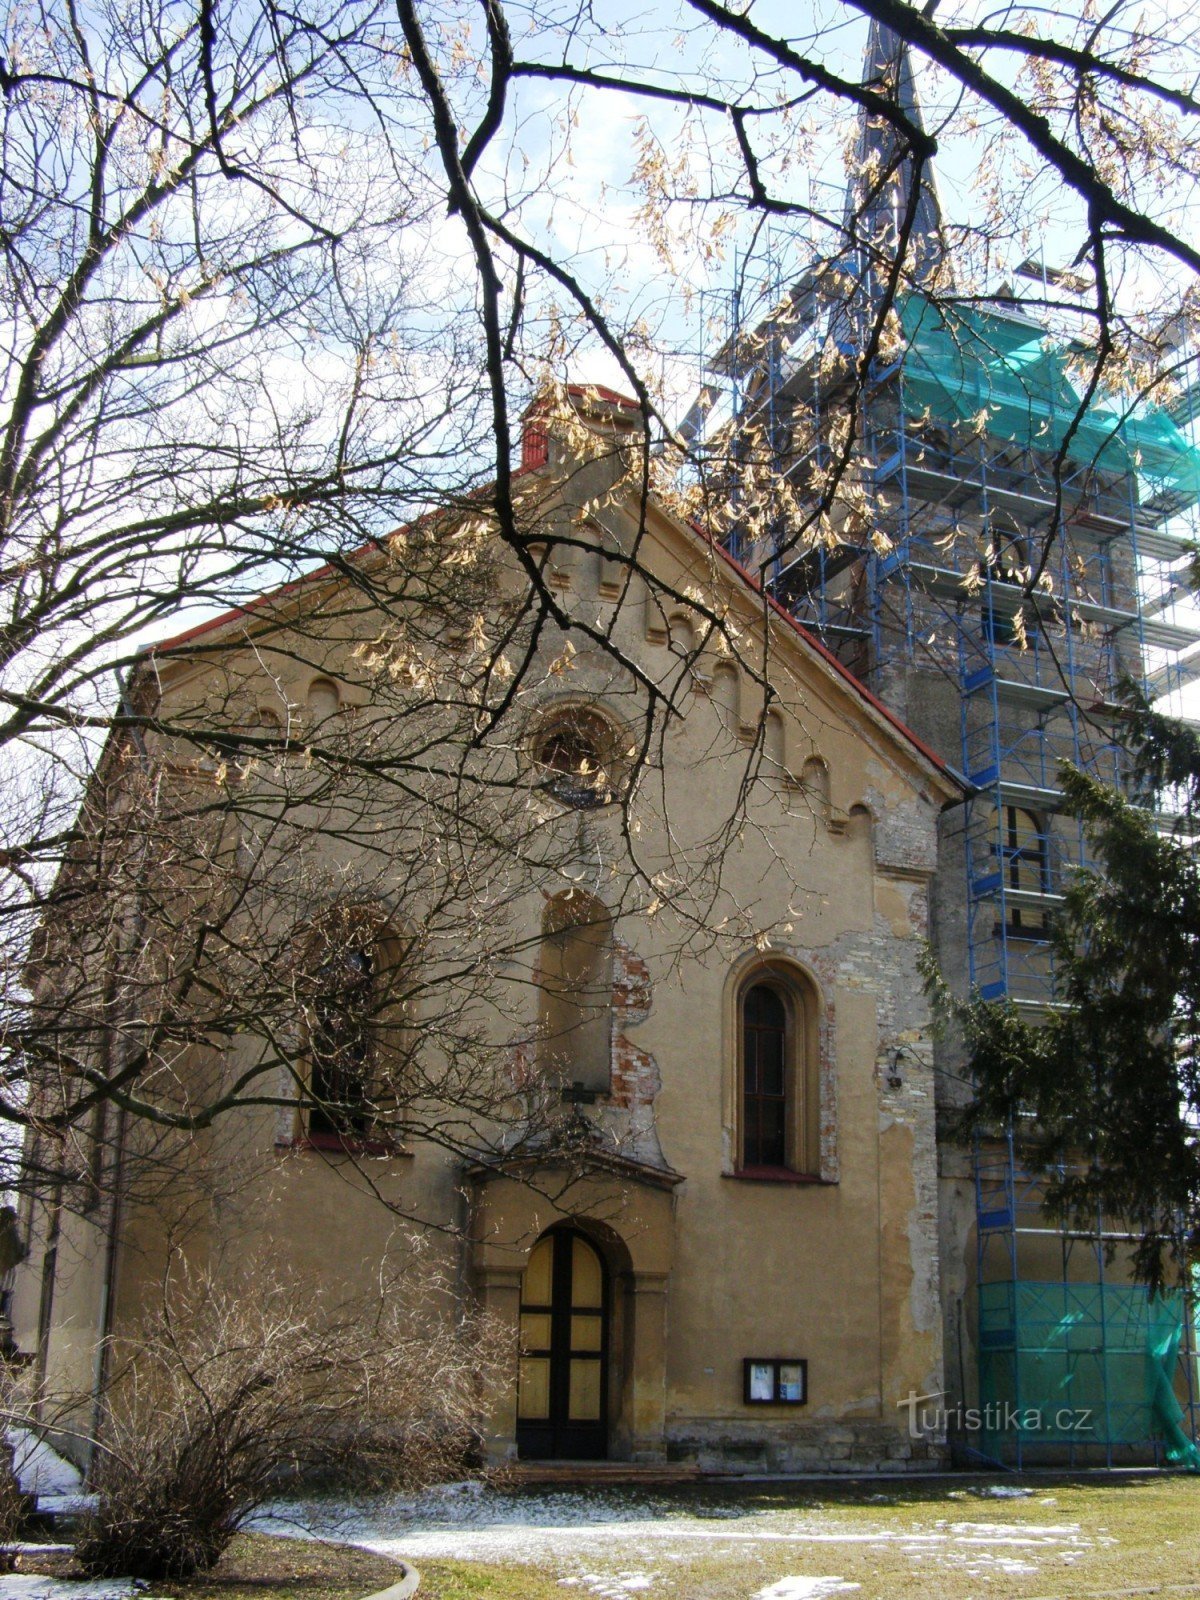 Ville de Králové - Église de St. Marchés